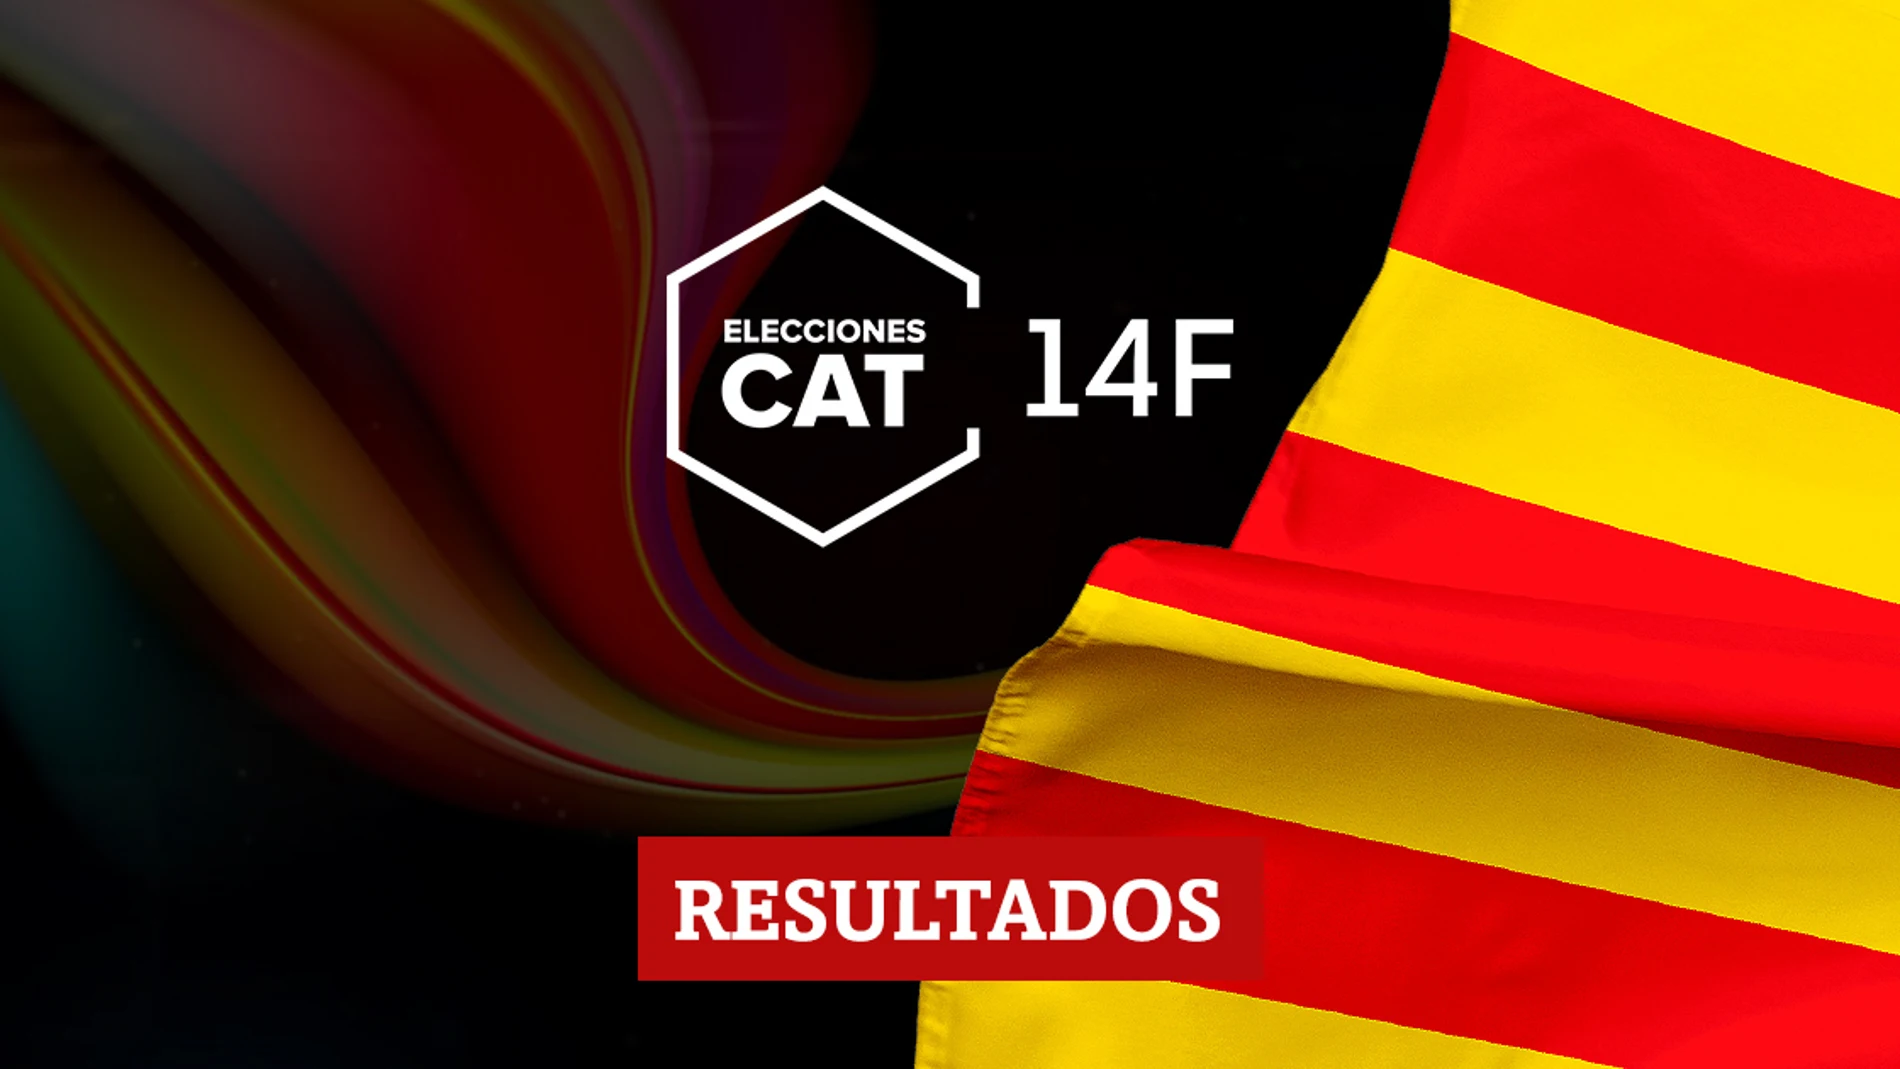 Resultados en Sant Fruitós de Bages de las elecciones catalanas del 14F 2021